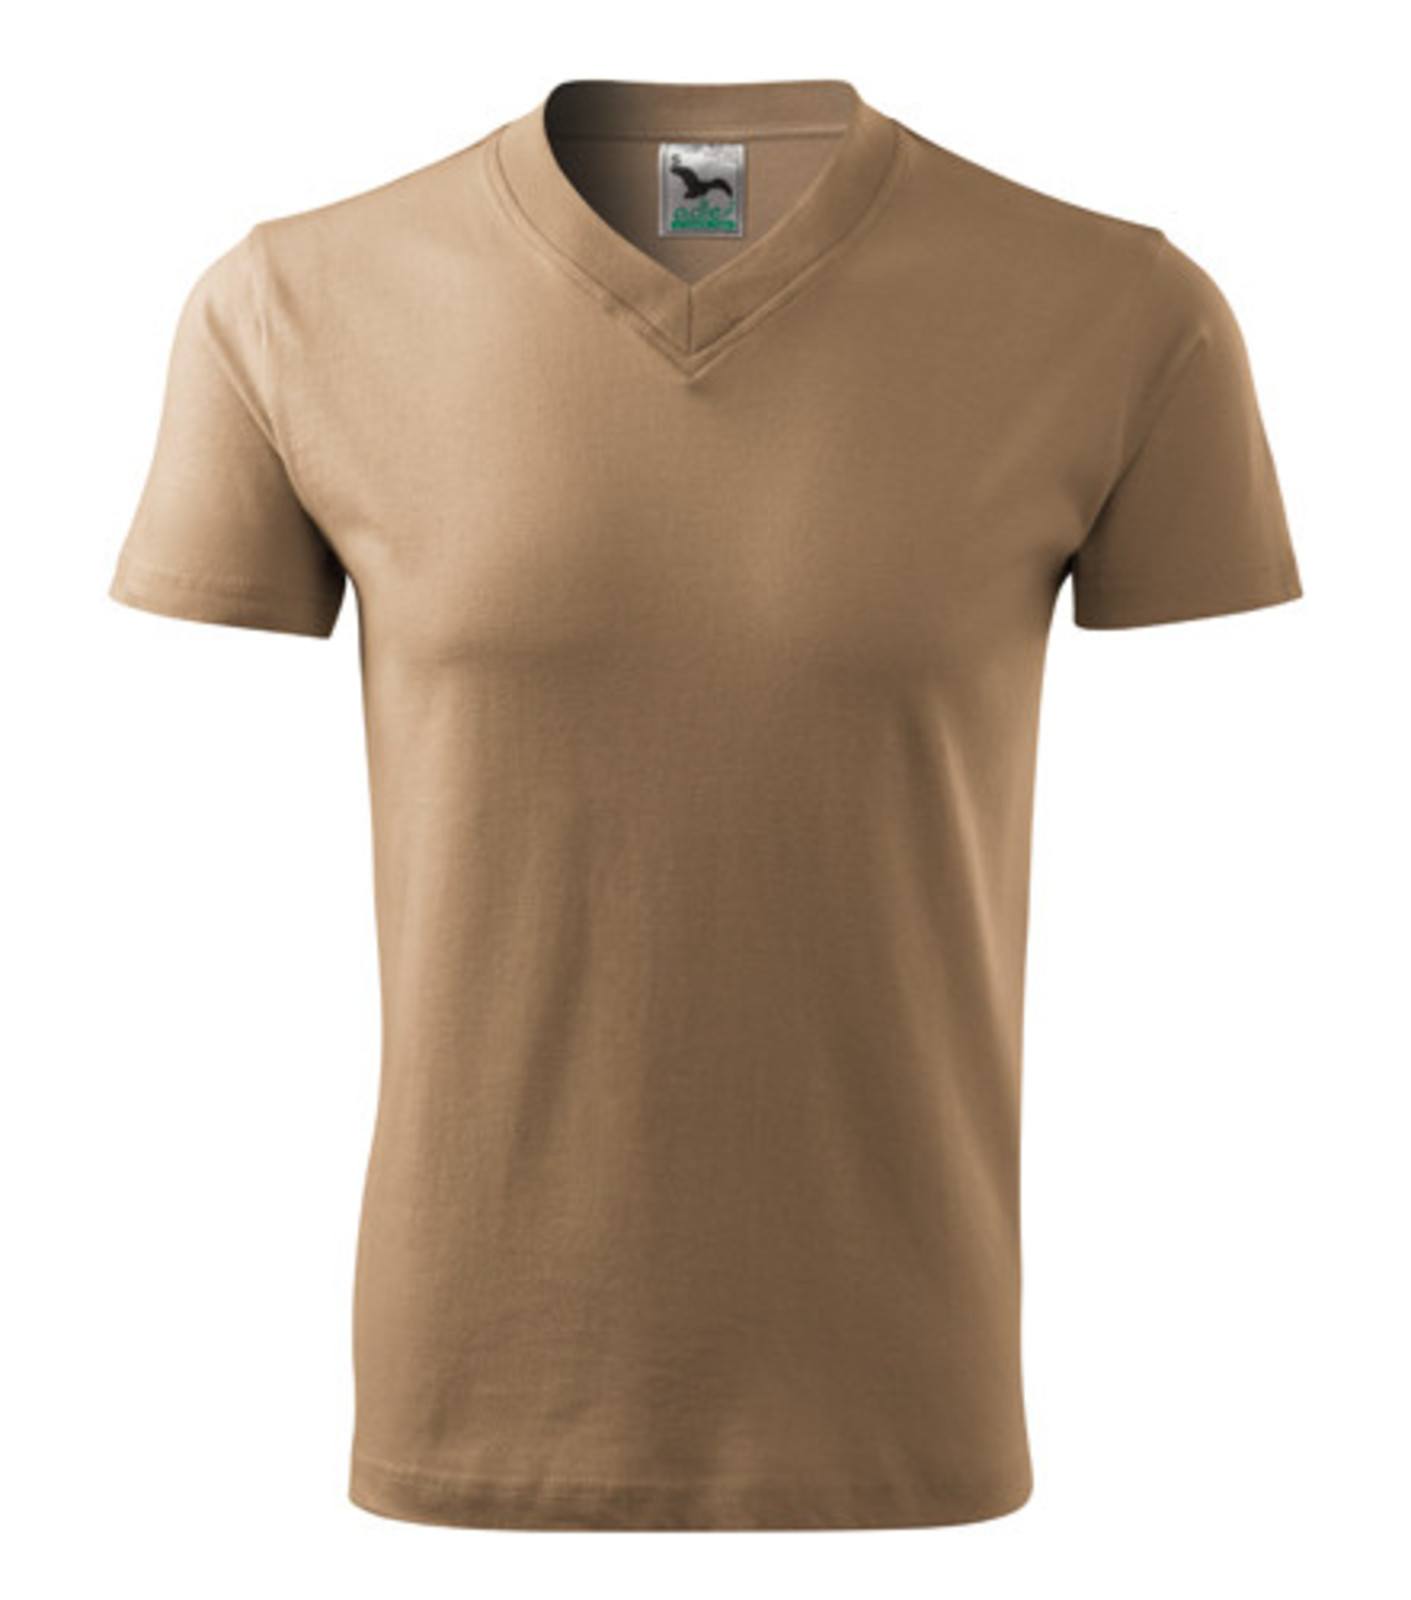 Unisex tričko s výstrihom Adler V-Neck 102 - veľkosť: S, farba: piesková